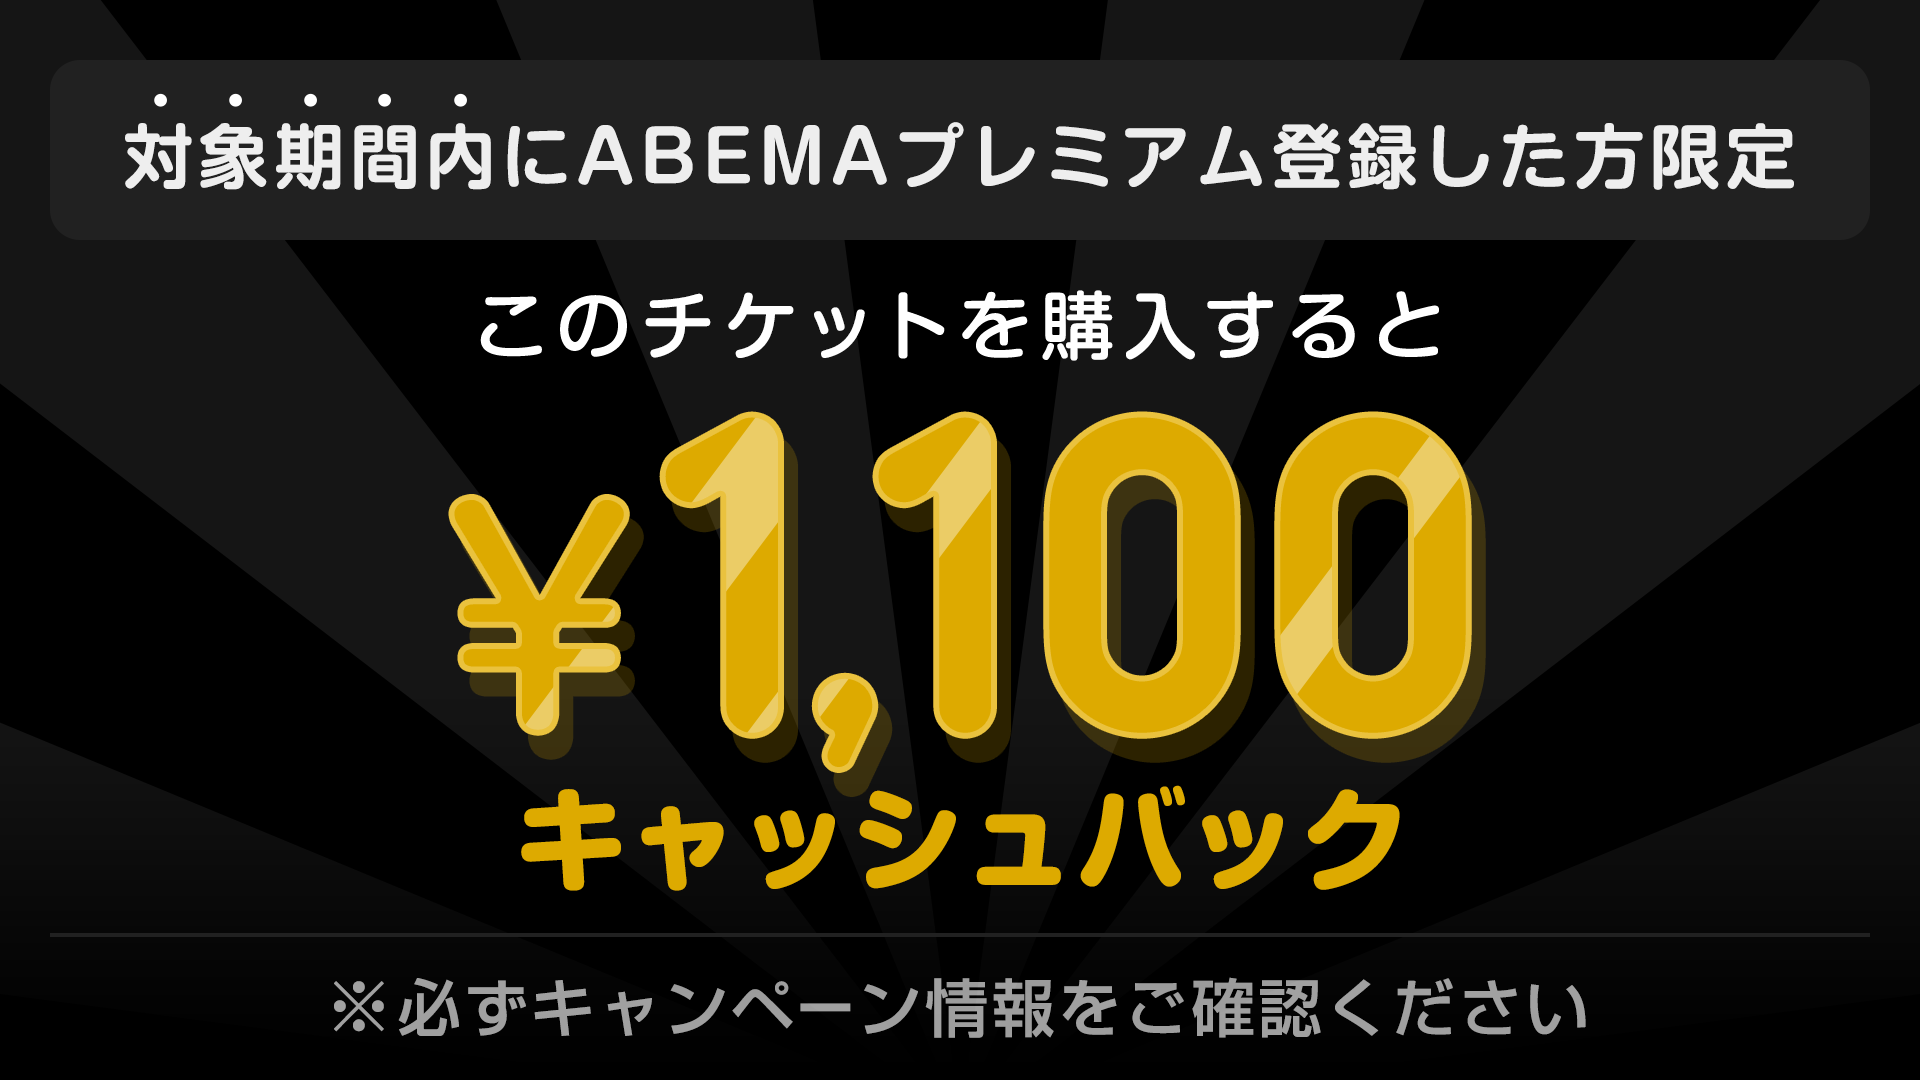 対象期間内にABEMAプレミアム登録した方限定 このチケットを購入すると ¥1,100キャッシュバック